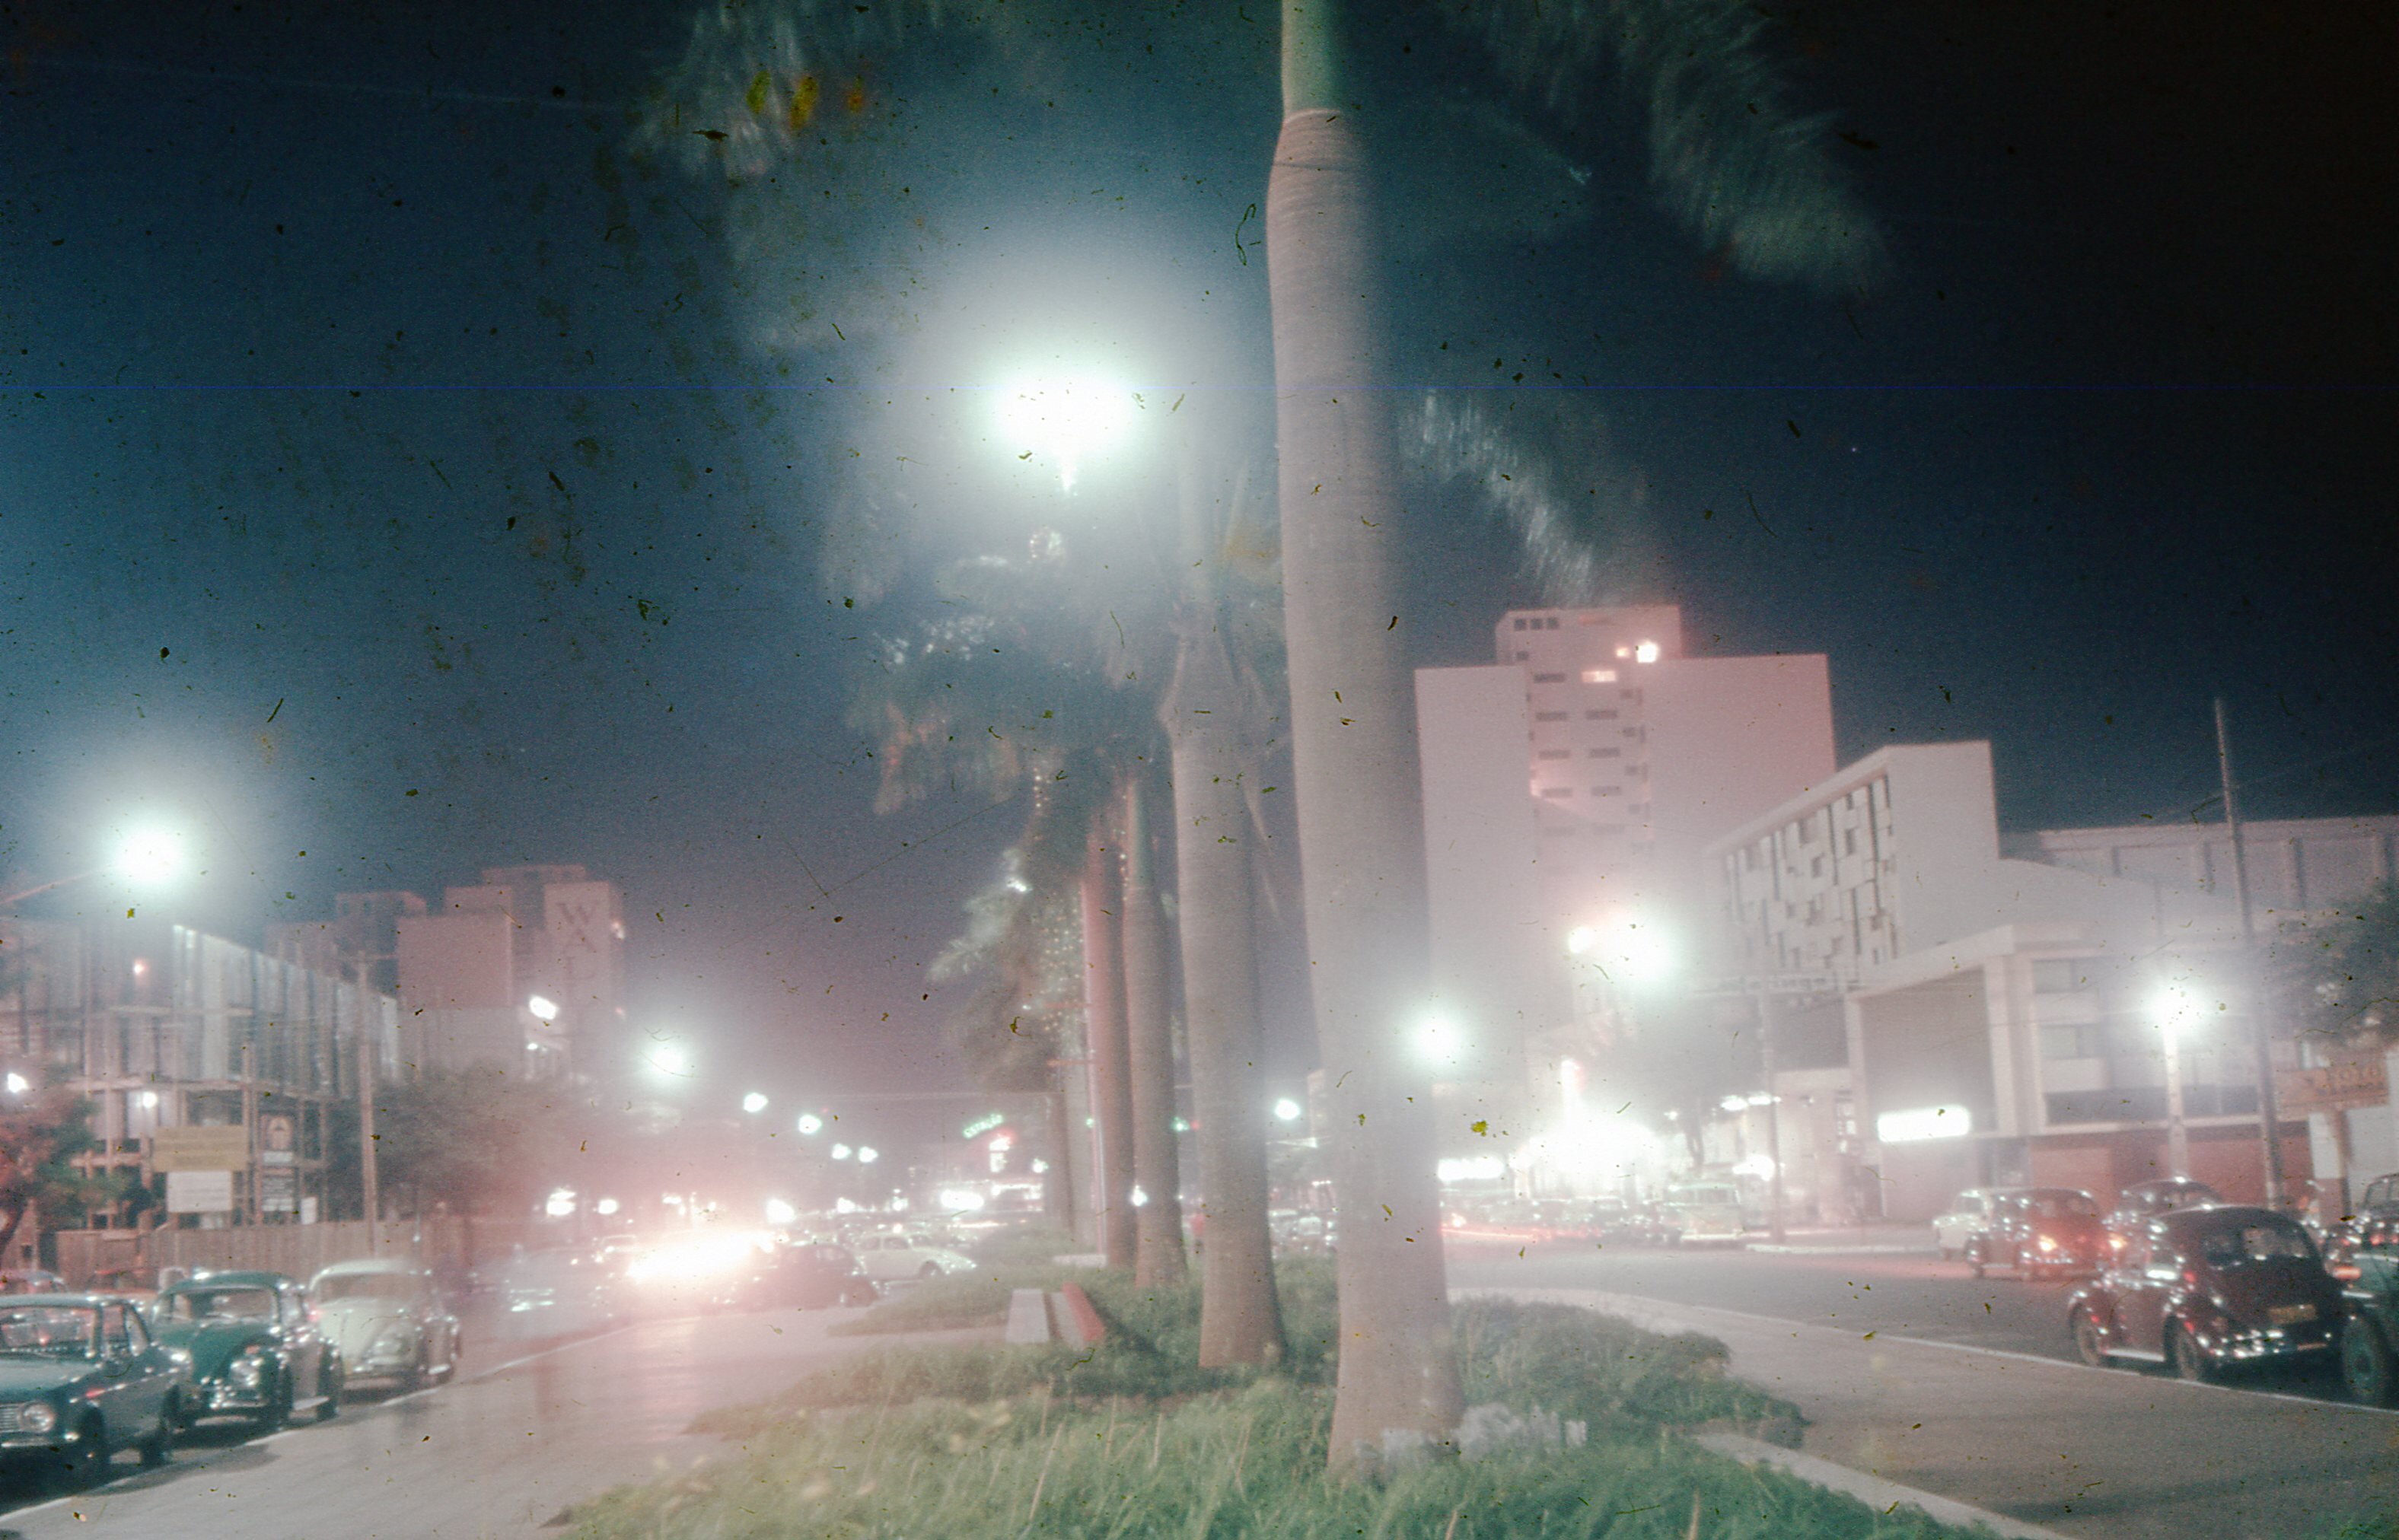 Vista noturna da avenida Getúlio Vargas - Década de 1970